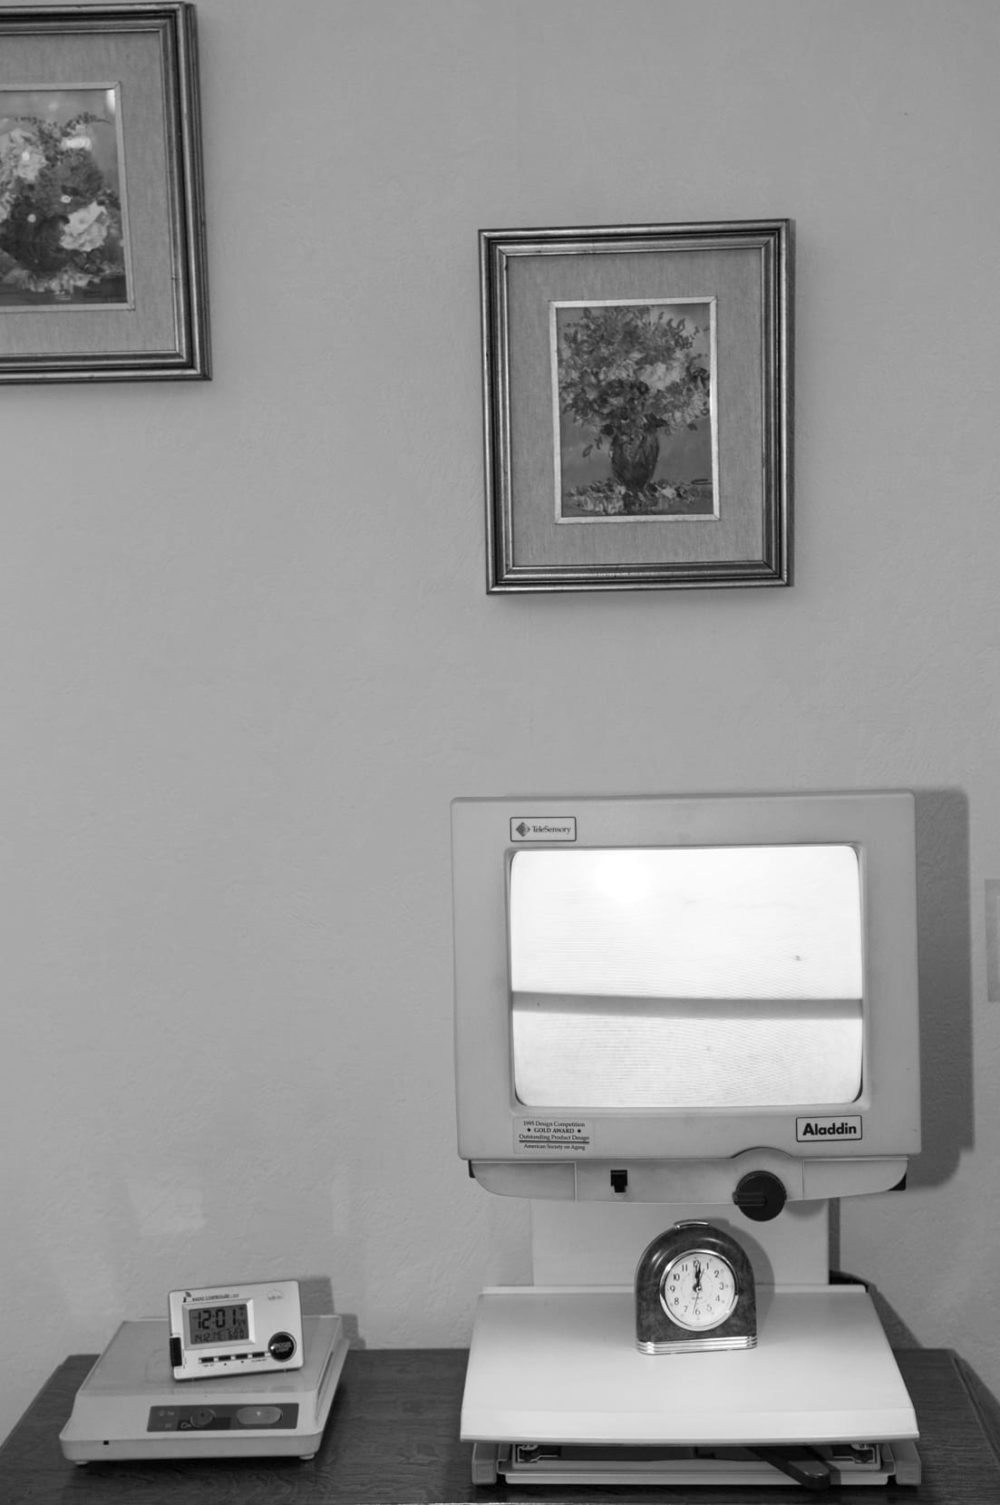 Tours d’Yser, tours d’histoire, une création documentaire photographique et sonore d’Émilie Danchin, une coproduction de la Fédération Indépendante des Seniors, BNA-BBOT, le Service de cohésion sociale du quartier nord subventionnée par la Fondation Roi Baudouin, Bruxelles